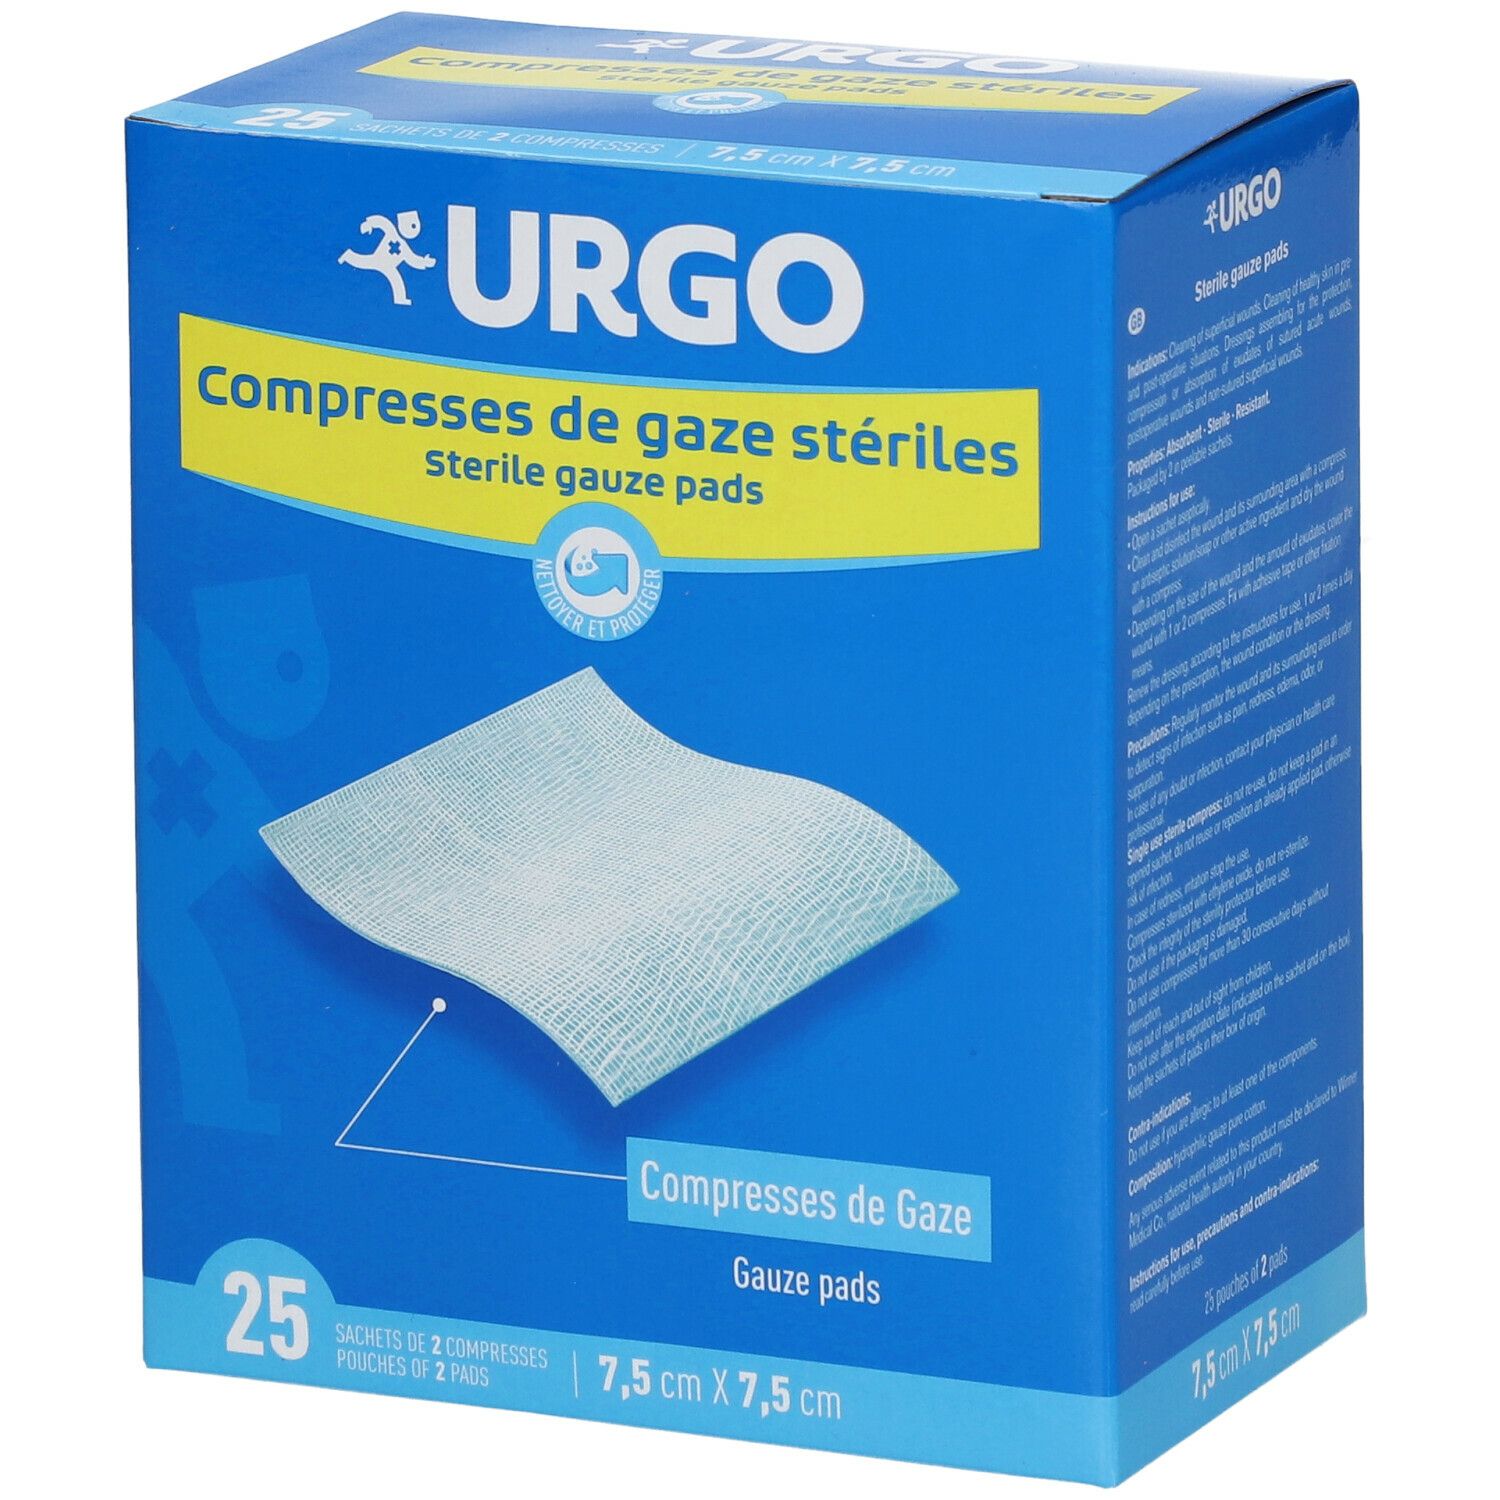 Urgo Compresses stériles de gaze 7,5 cm x 7,5 cm